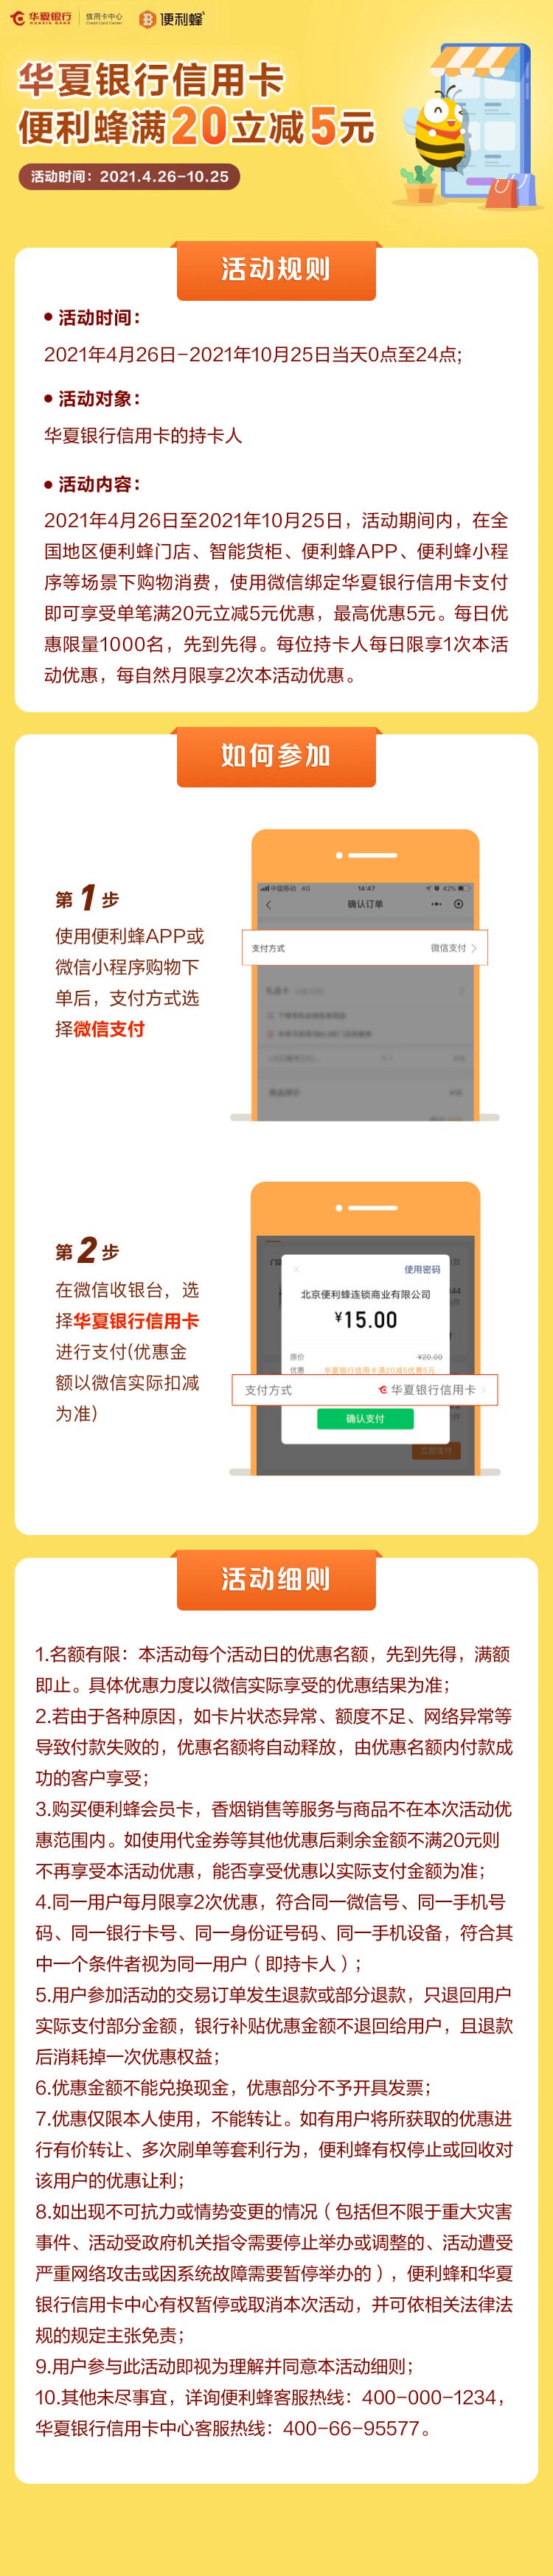 2021年4月27日华夏银行信用卡优惠活动推荐